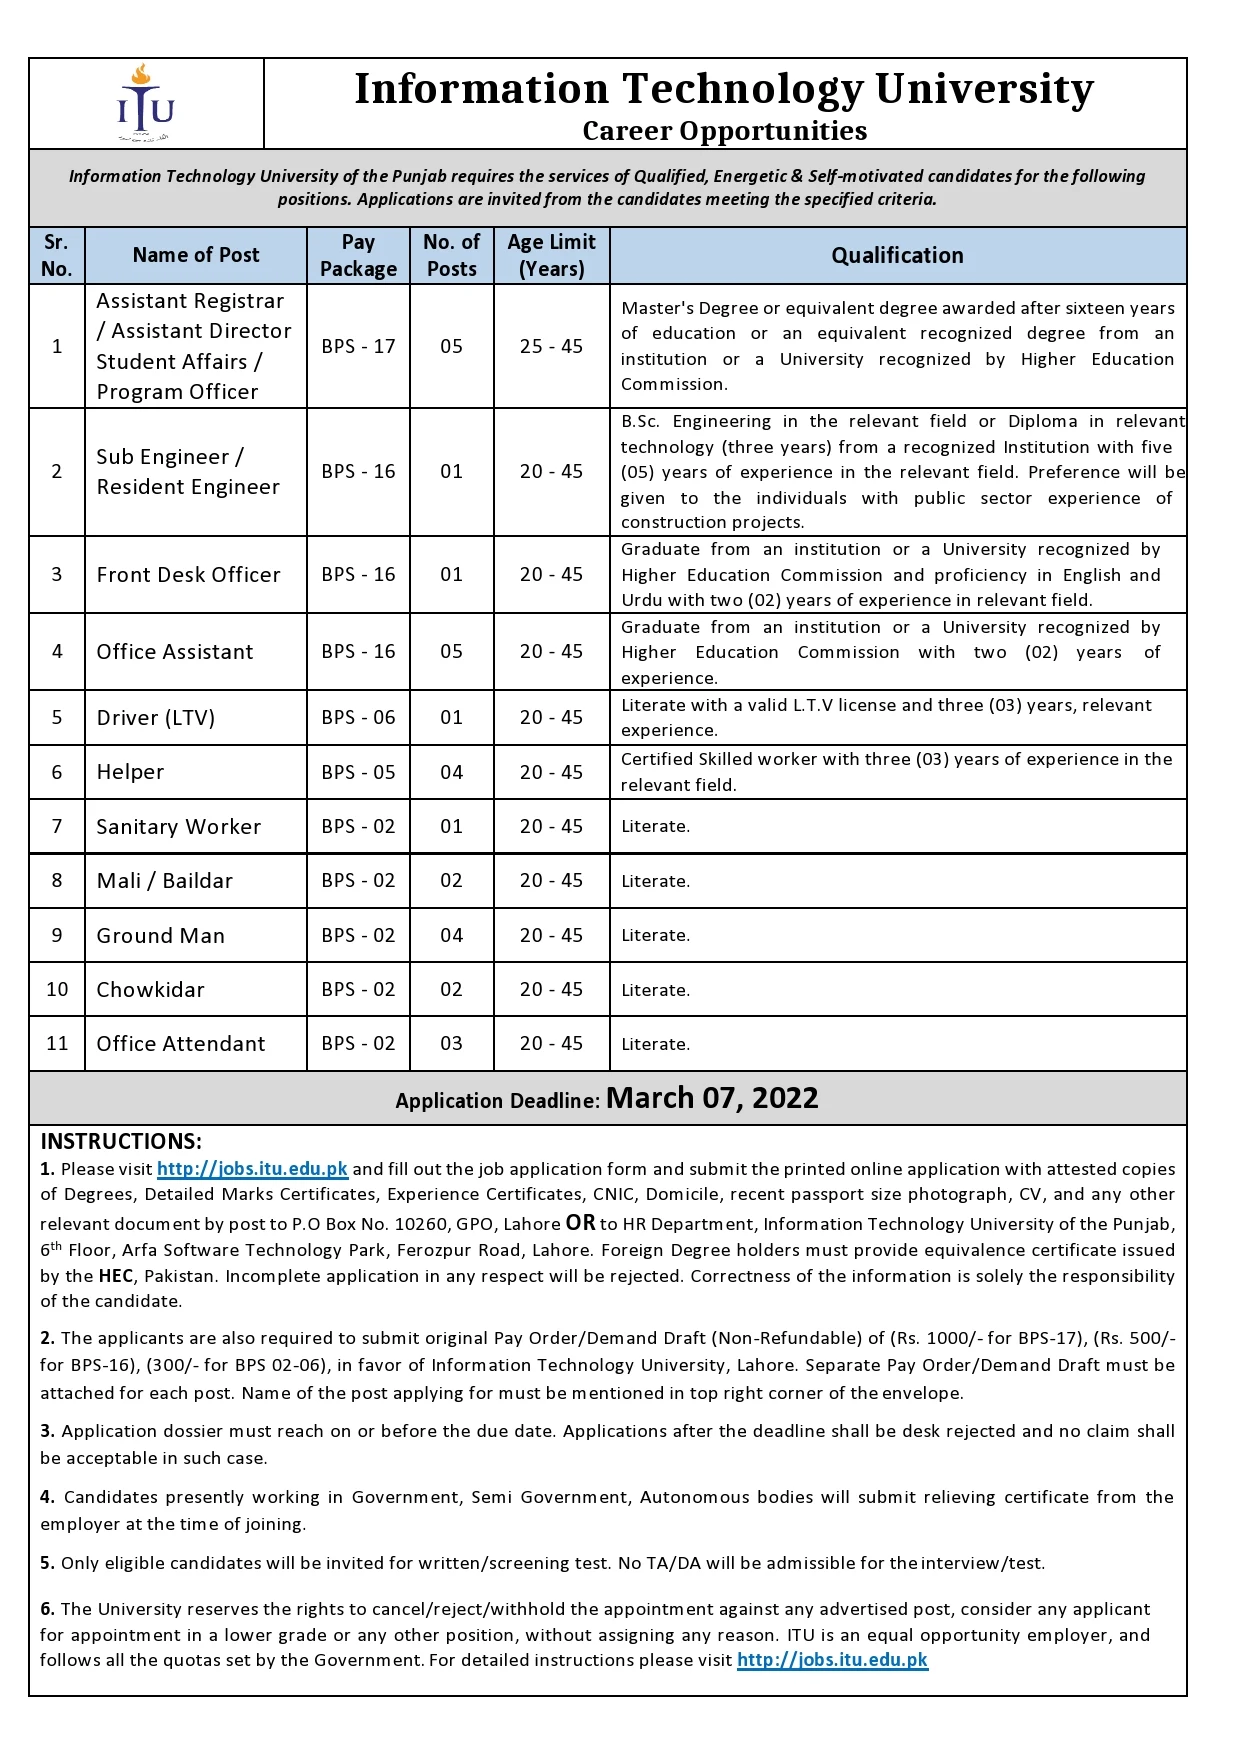 Information Technology University (ITU) Jobs 2022 | Latest Job in Pakistan